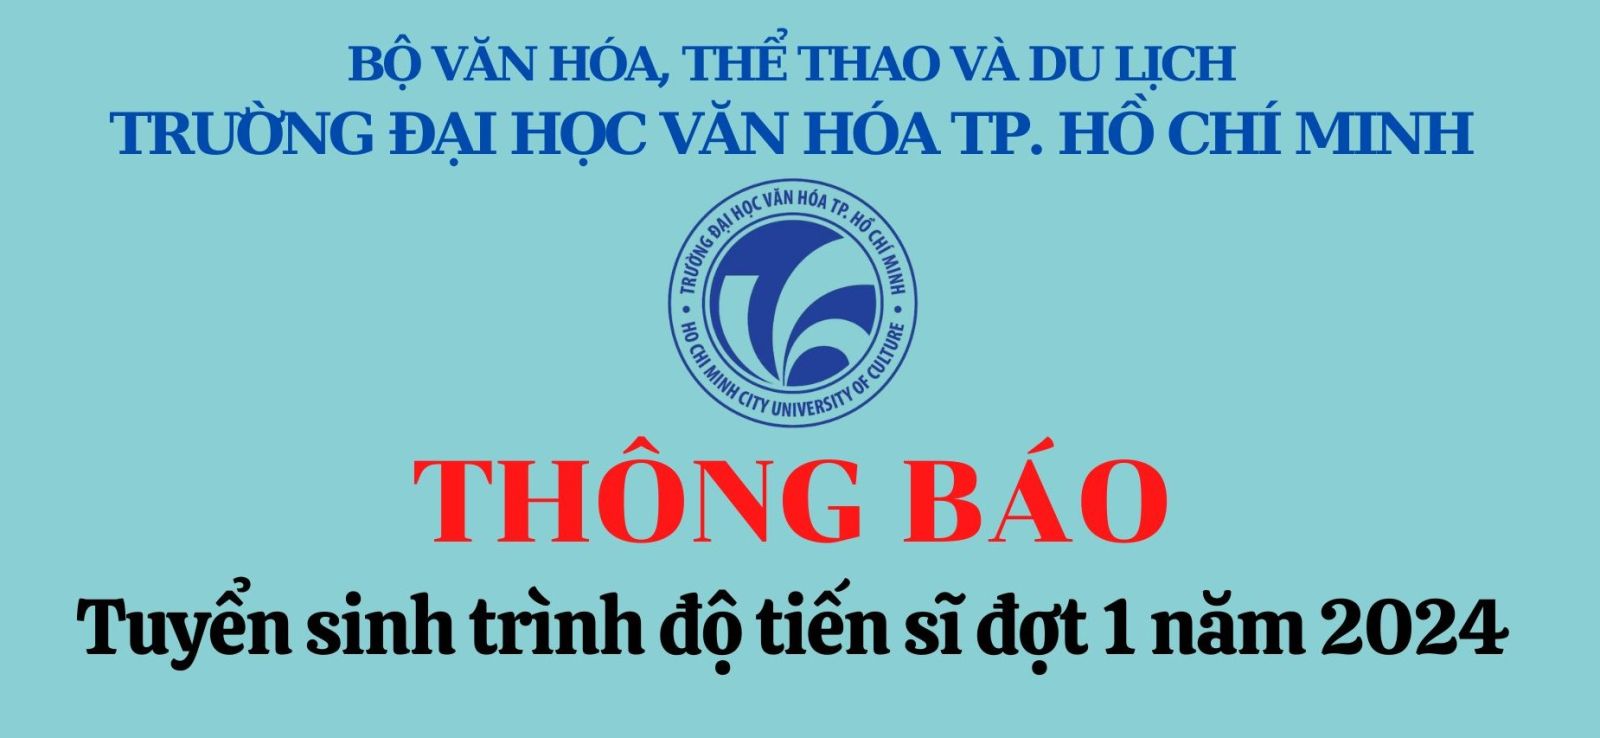 Trường Đại học Văn hóa Thành phố Hồ Chí Minh Thông báo tuyển sinh trình độ tiến sĩ năm 2024